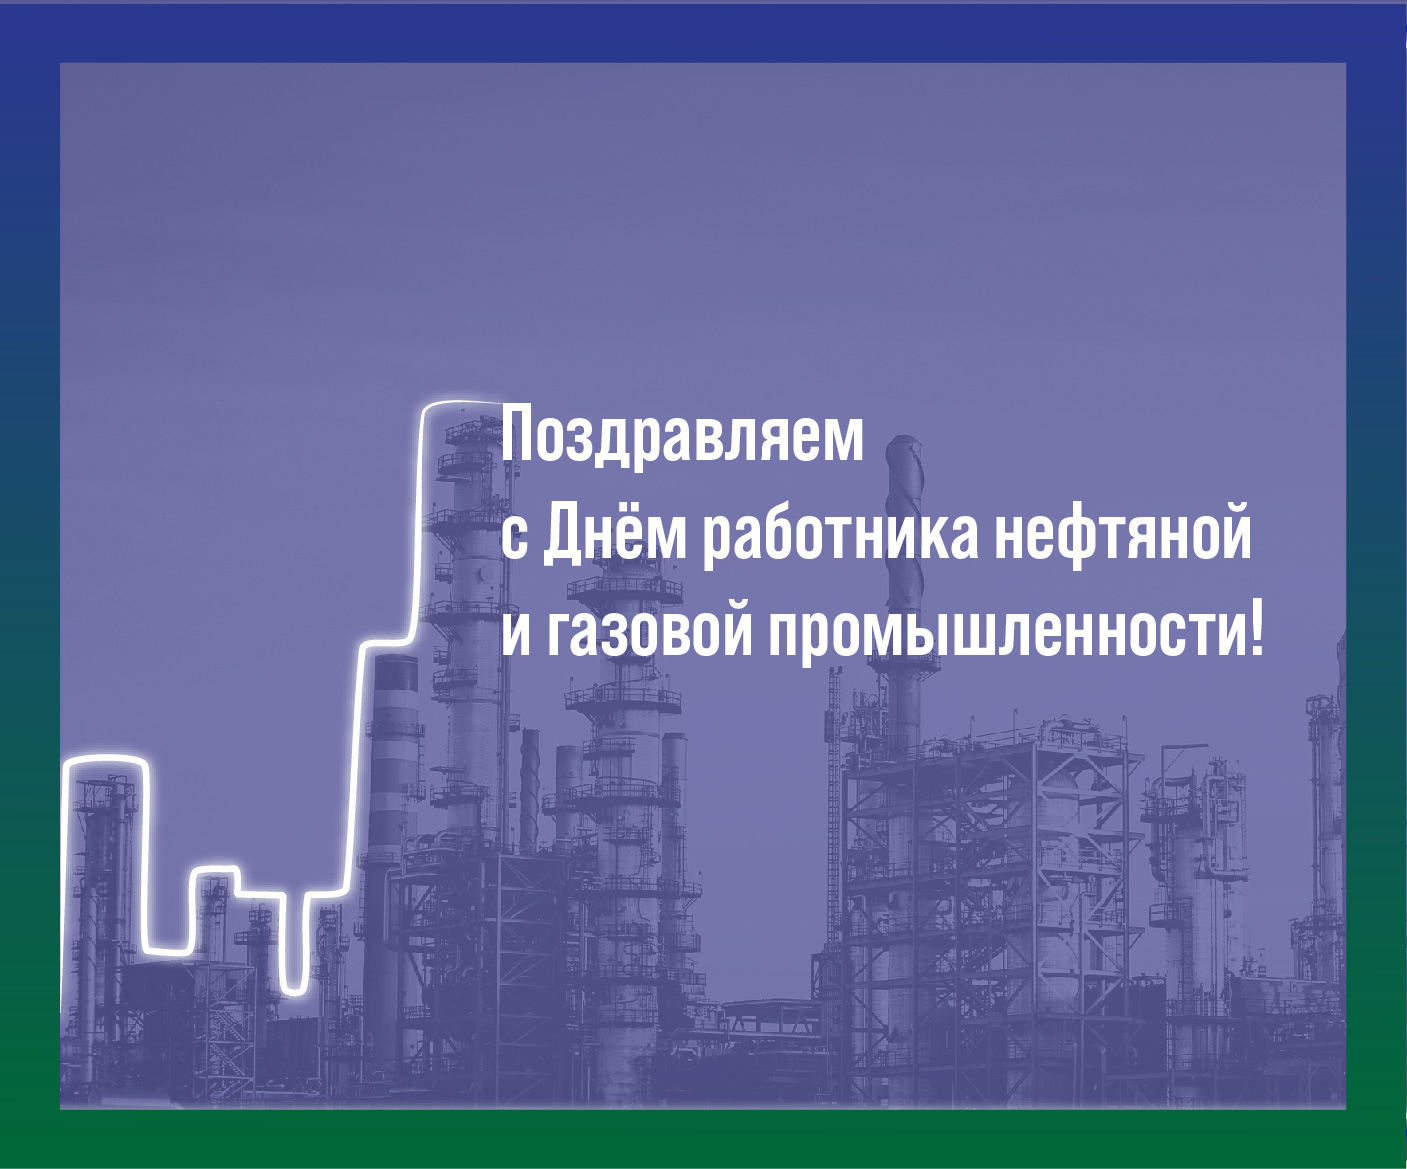 АО "СКТБ "Катализатор" поздравляет с Днём работника нефтяной и газовой промышленности!